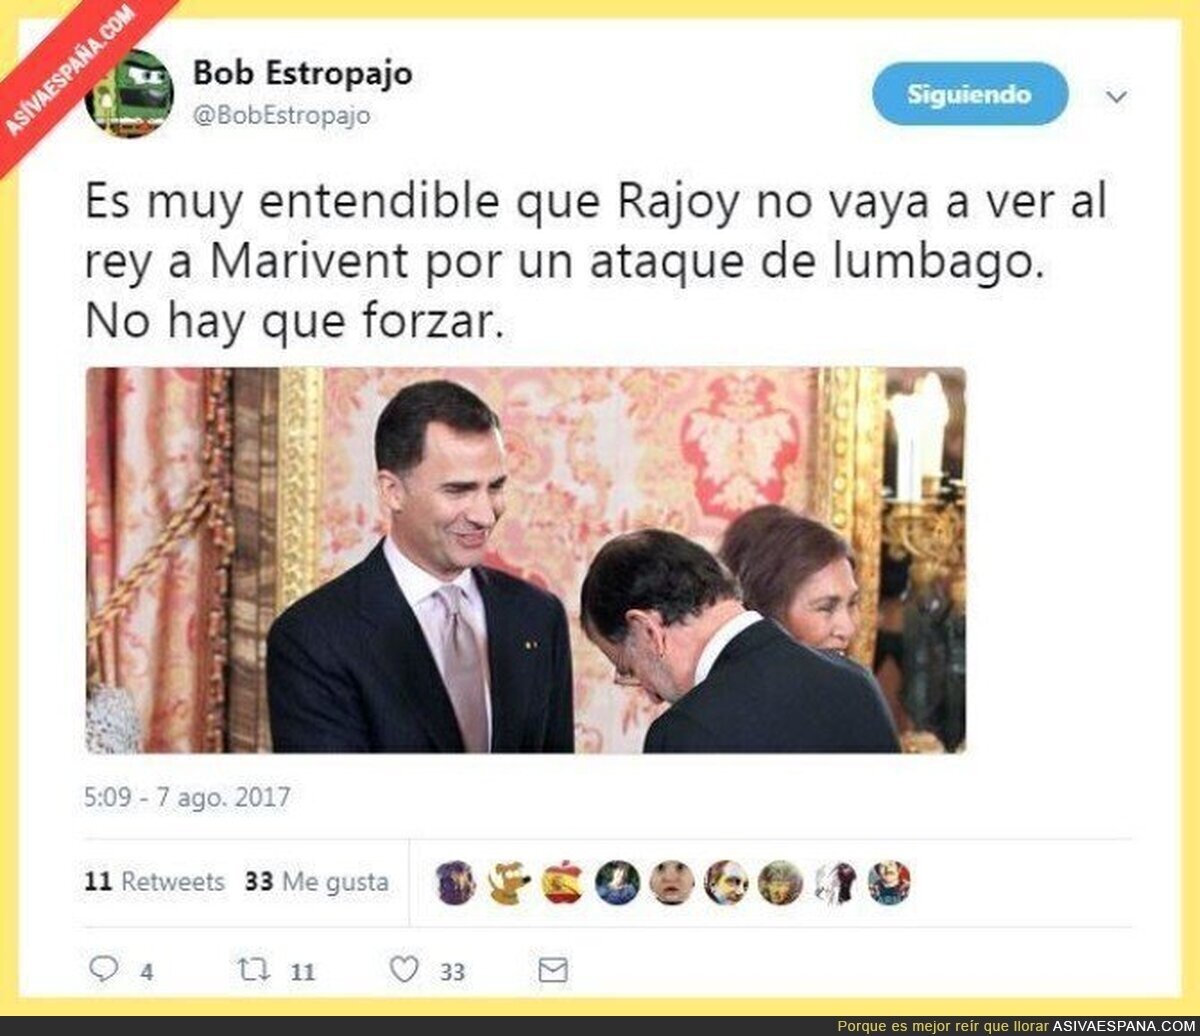 La razon por la que Rajoy retrasa su reunión con el rey